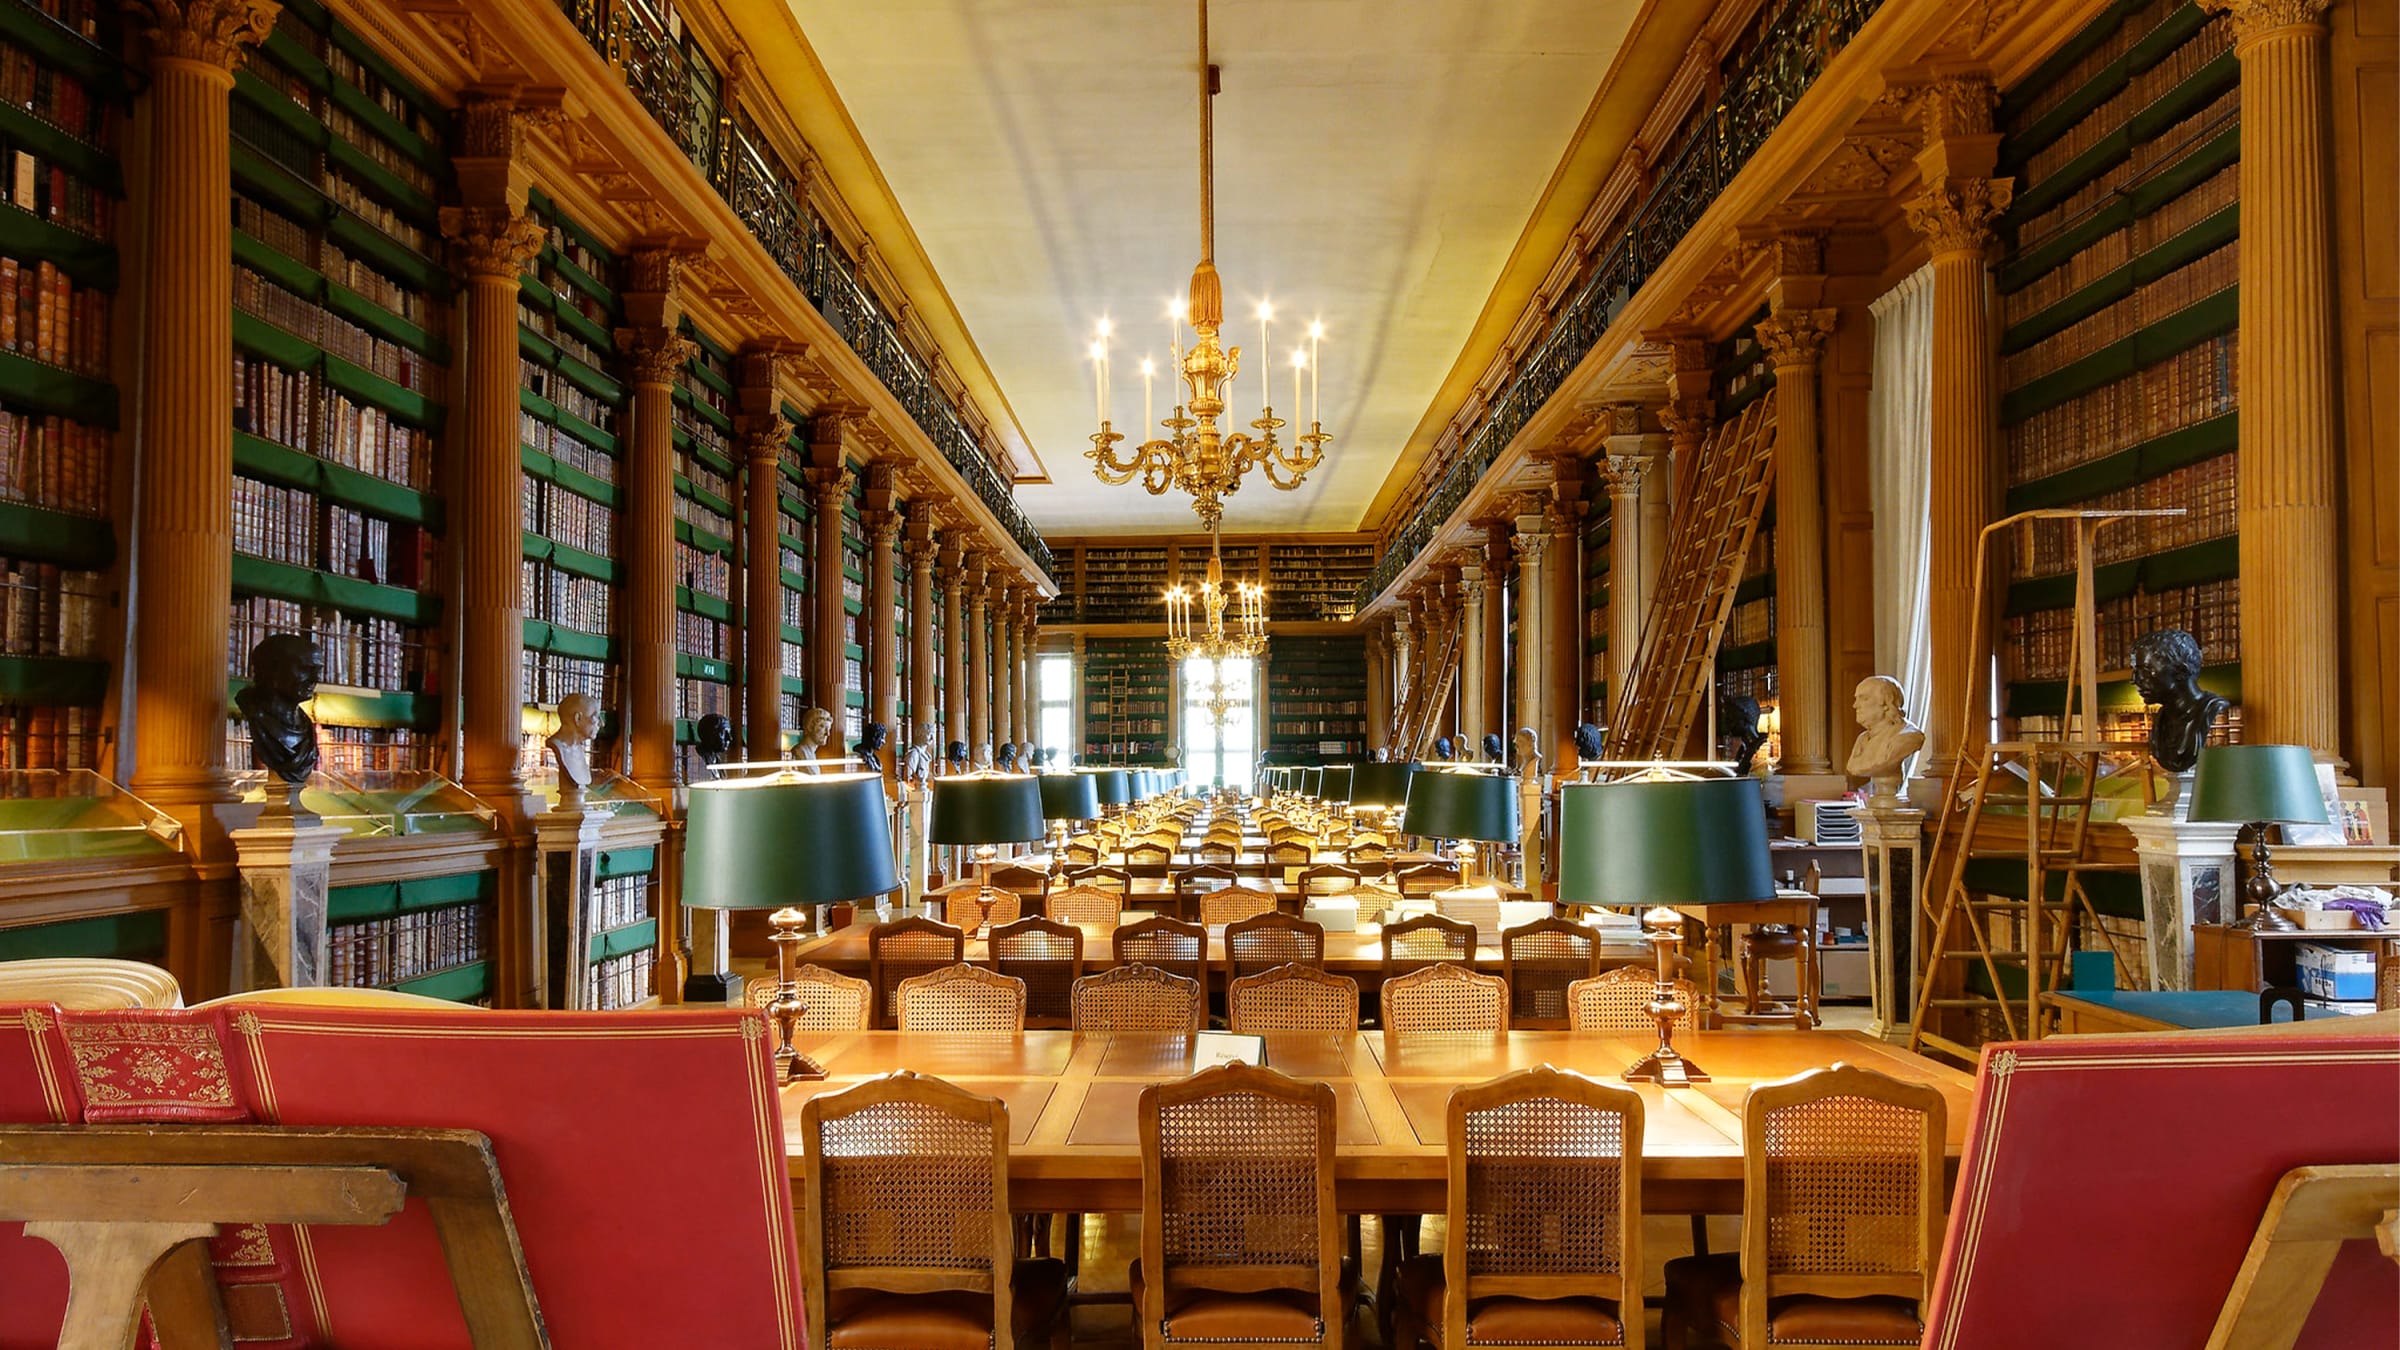 BibliothÃ¨que Mazarine, France's Oldest Public Library, is Paris' Best Oasis